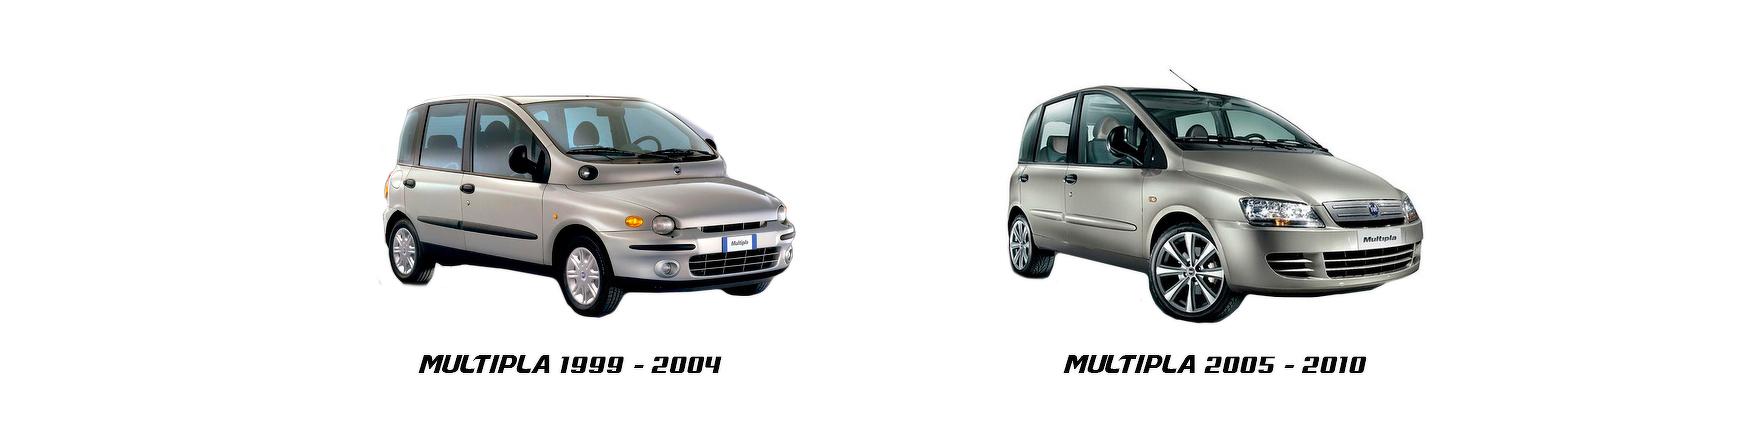 Piezas Fiat Multipla 2003, 2004, 2005, 2006, 2007, 2008, 2009 y 2010